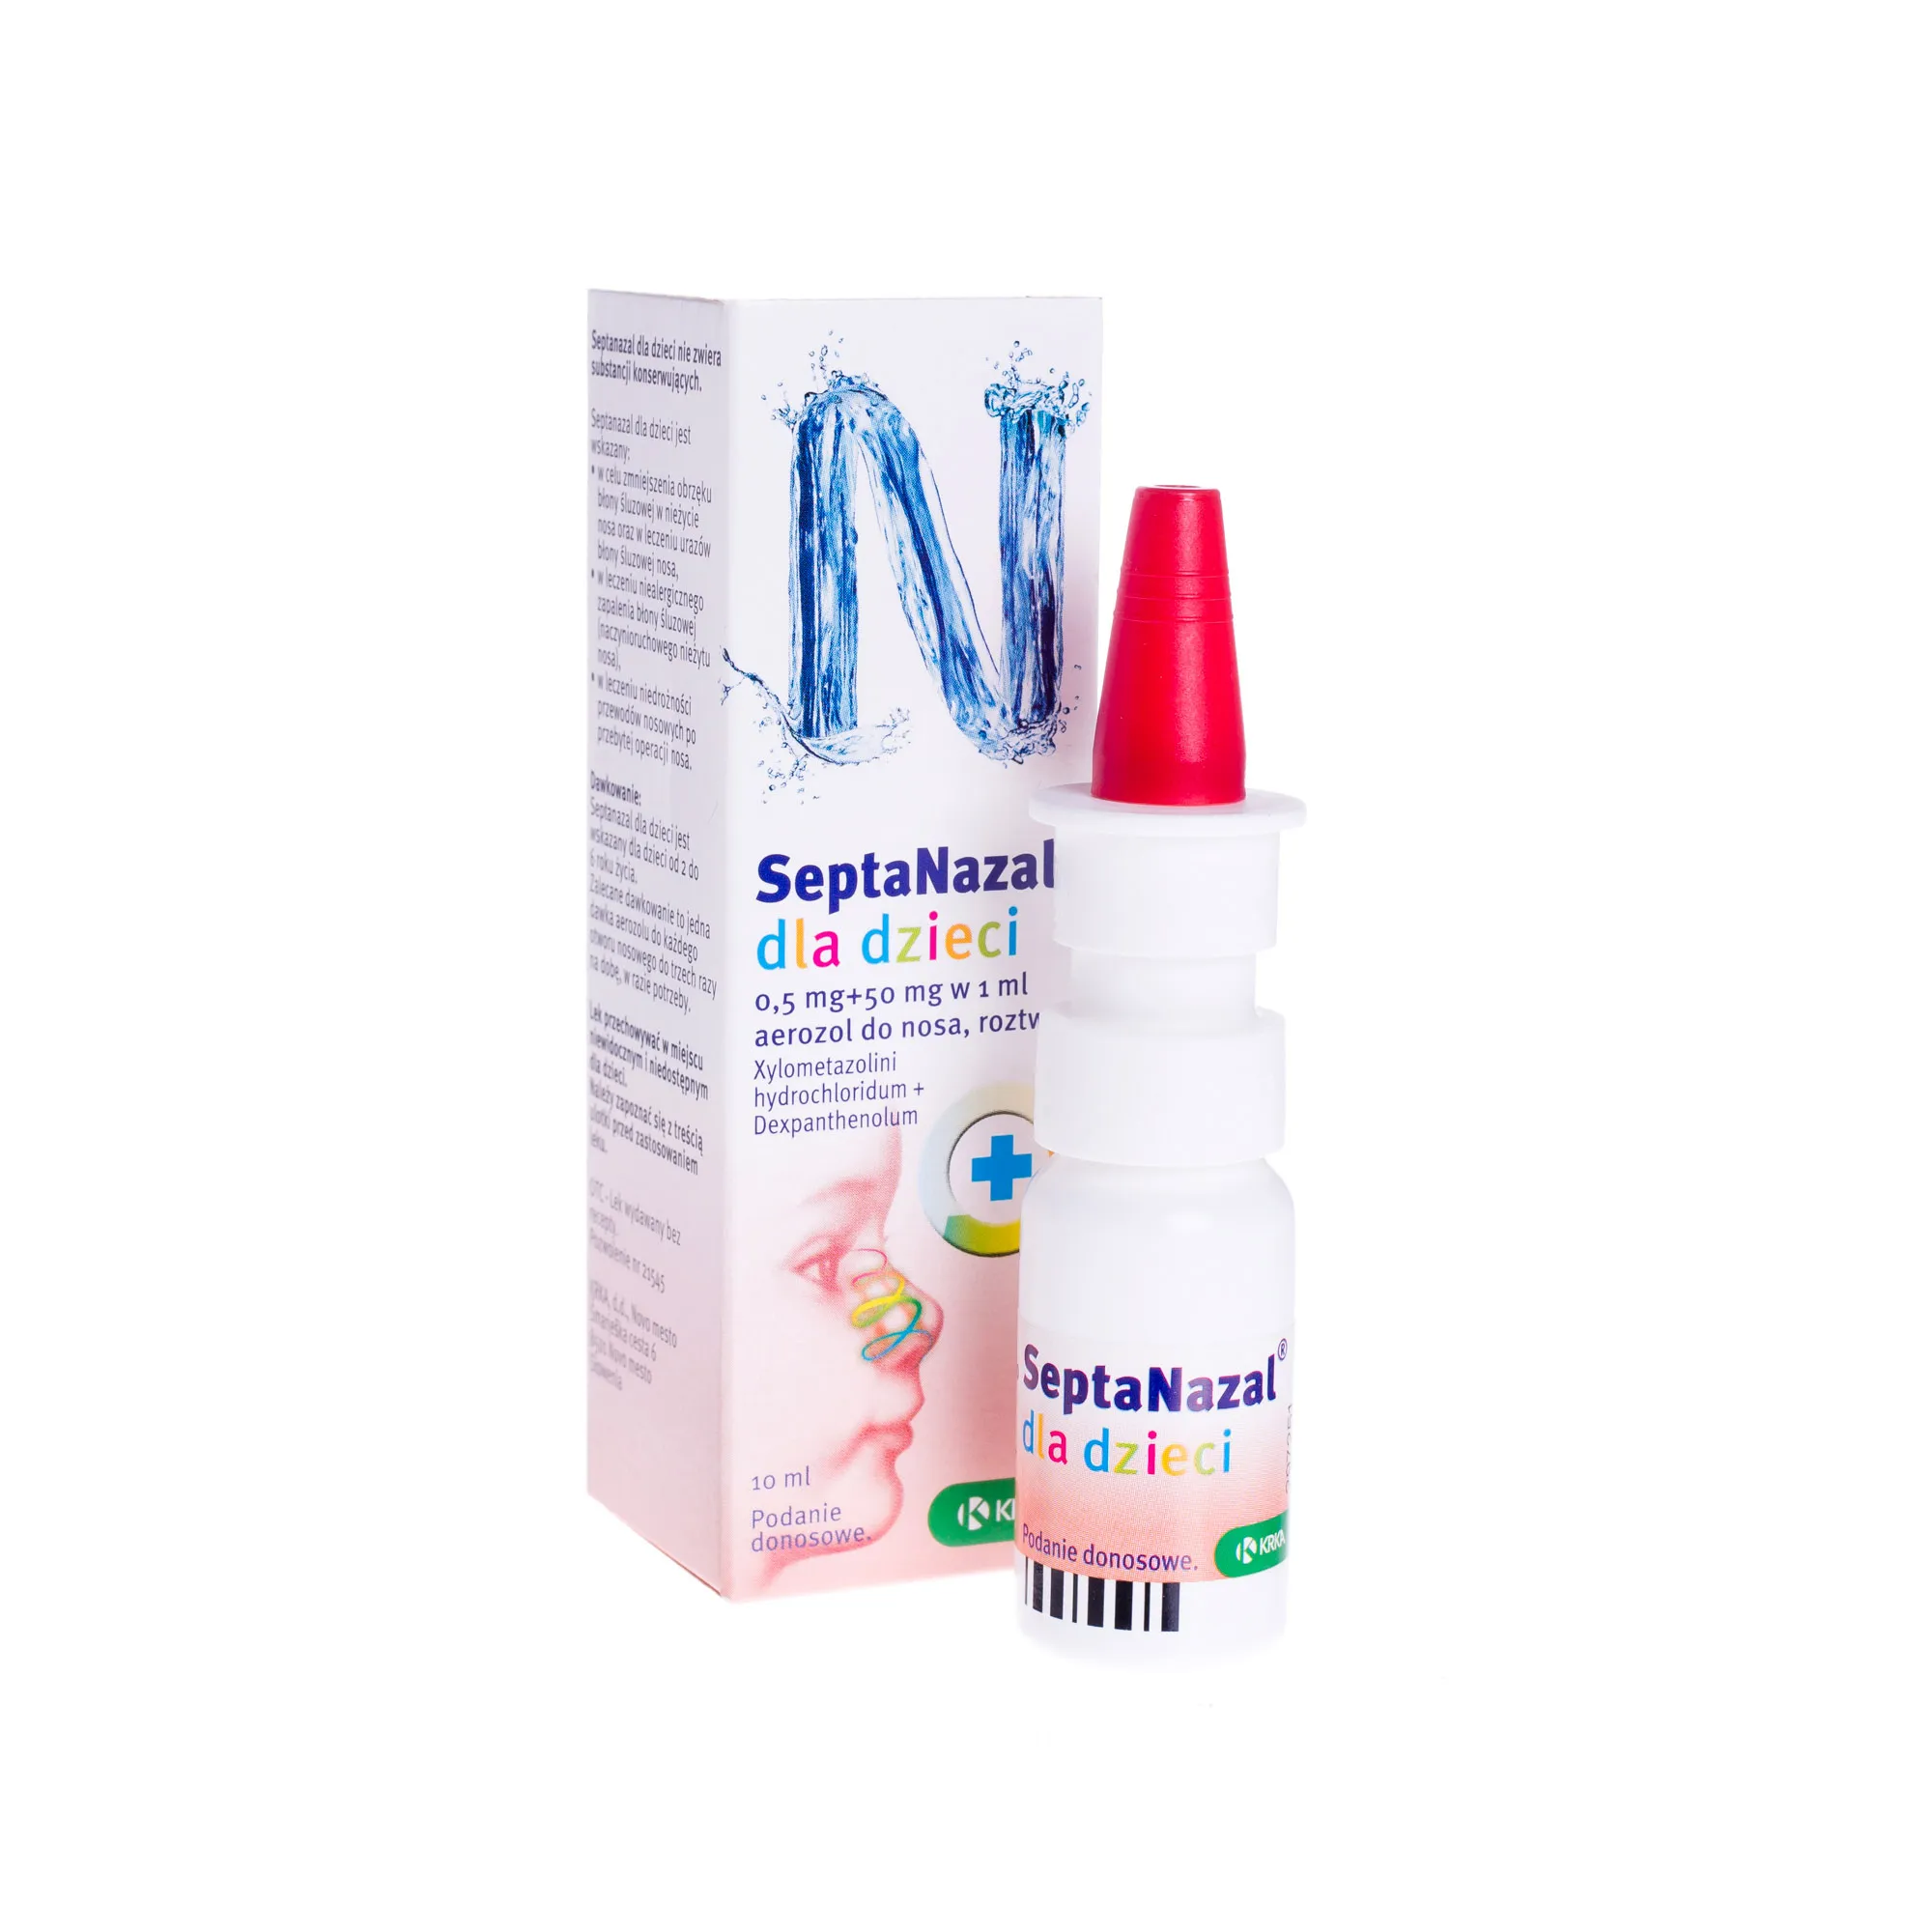 Septanazal dla dzieci, (0,5 mg + 50 mg)/1 ml , aerozol do nosa, 10 ml 